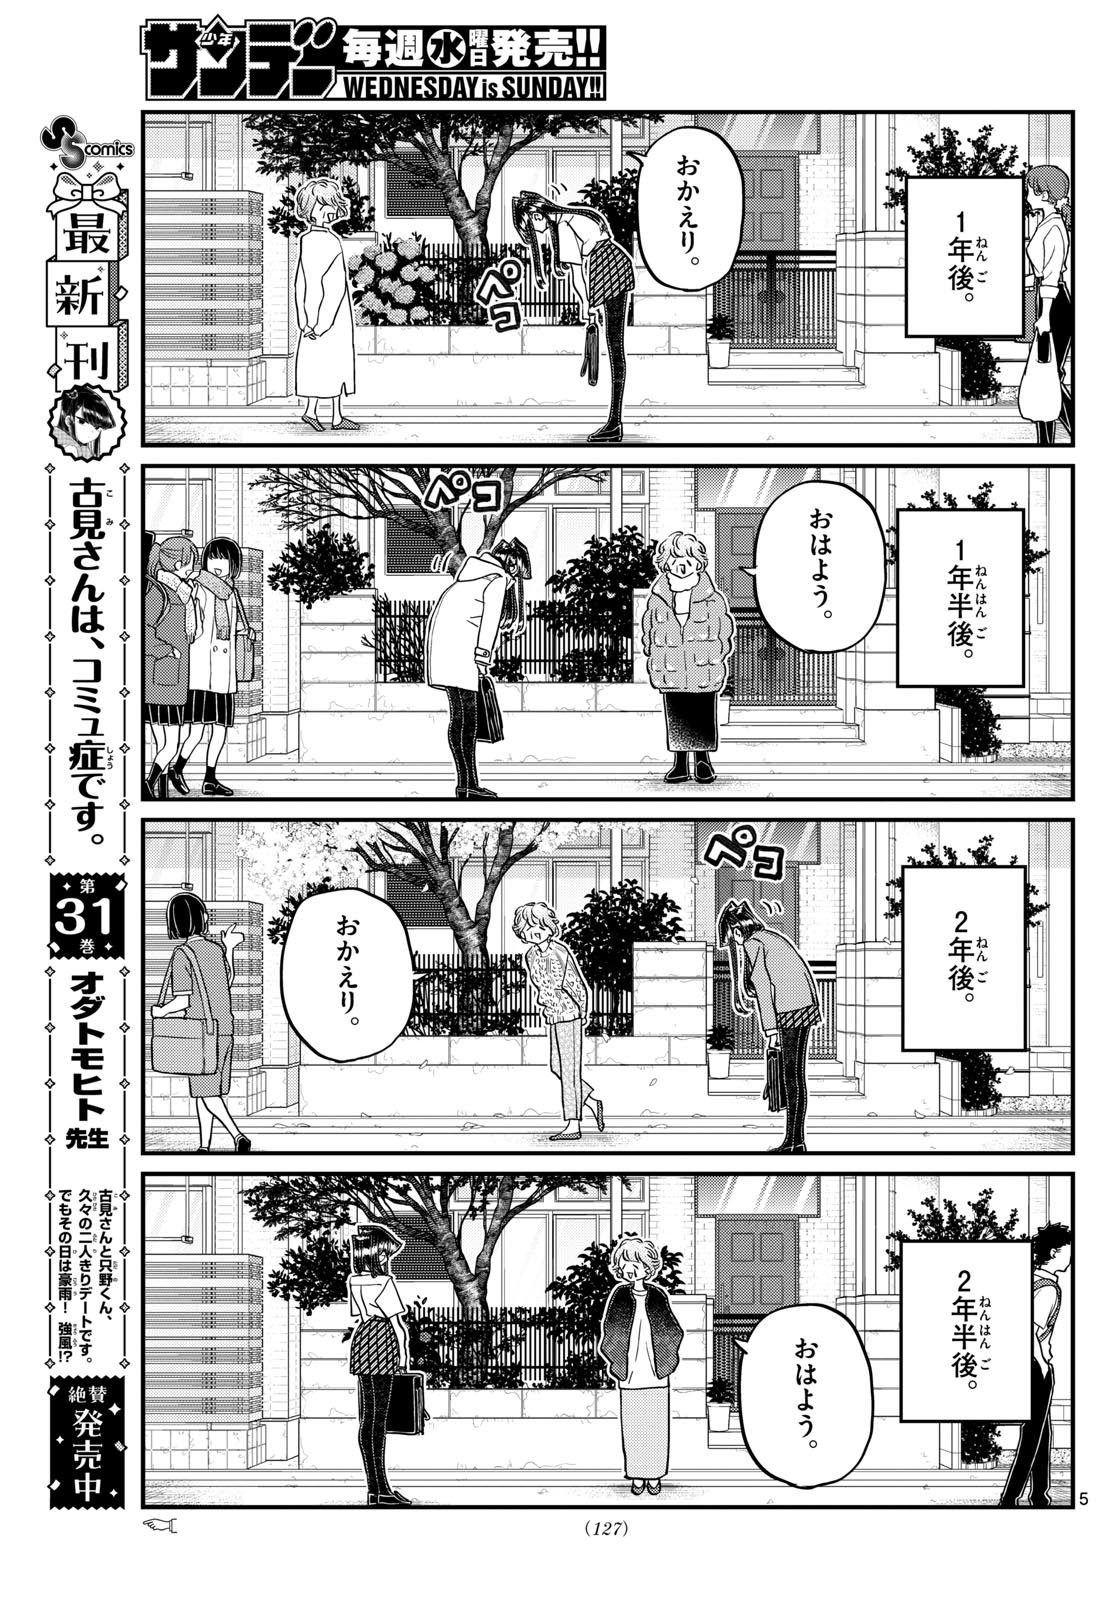 Read Komi-san wa Komyushou Desu 432 - Oni Scan